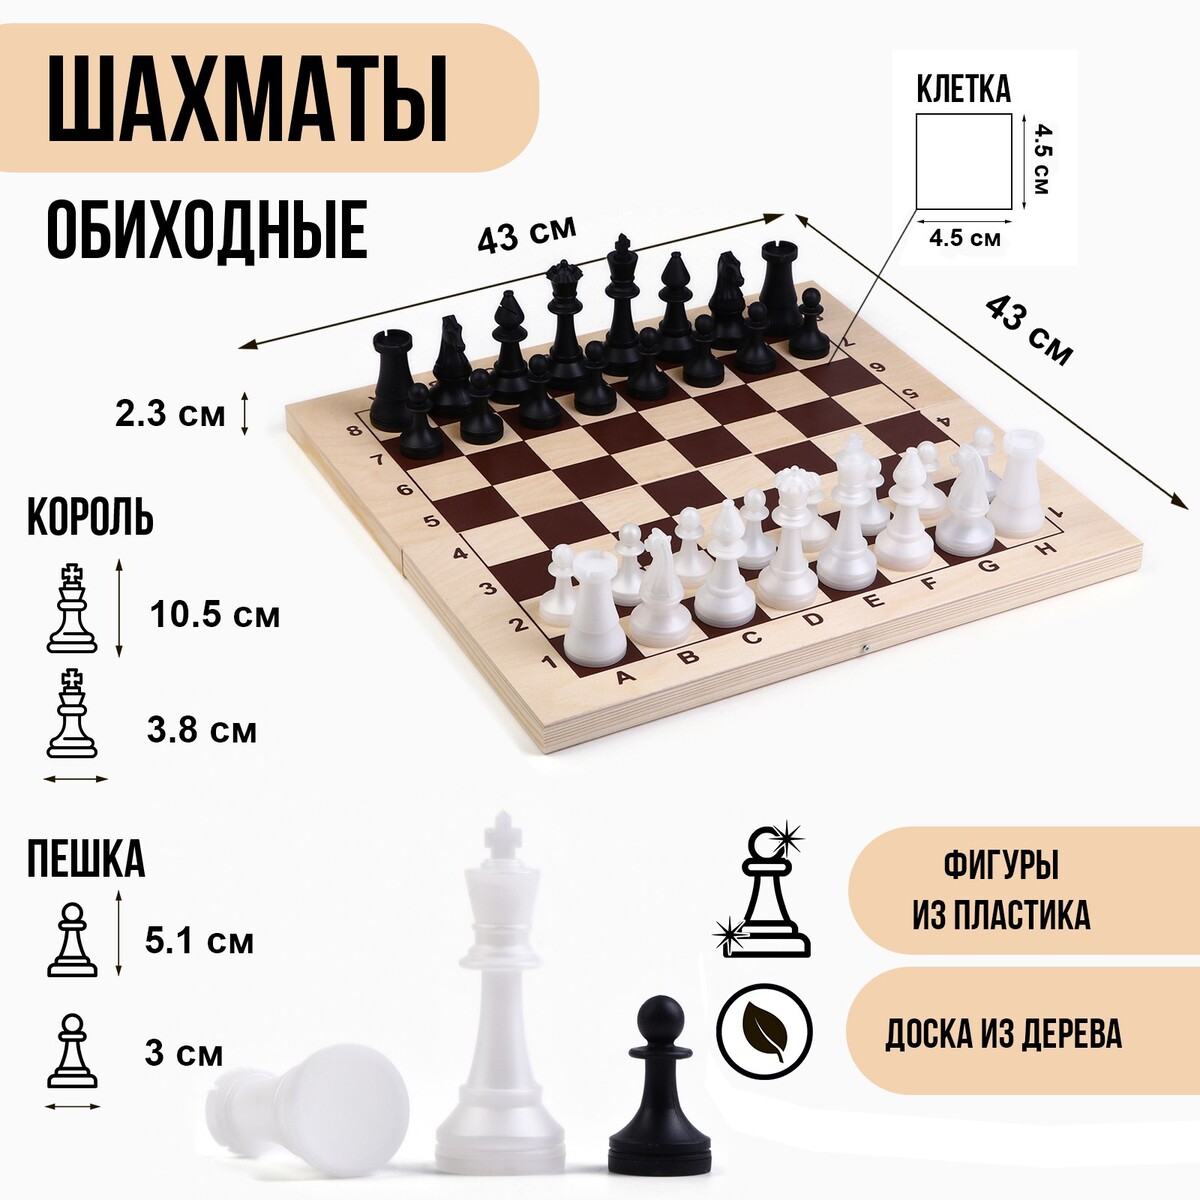 Шахматы гроссмейстерские, турнирные 43 х 43 см, фигуры пластик, король 10.5 см, пешка 5 см настольная игра набор 2 в 1 баталия шашки шахматы доска пластик 20х20см